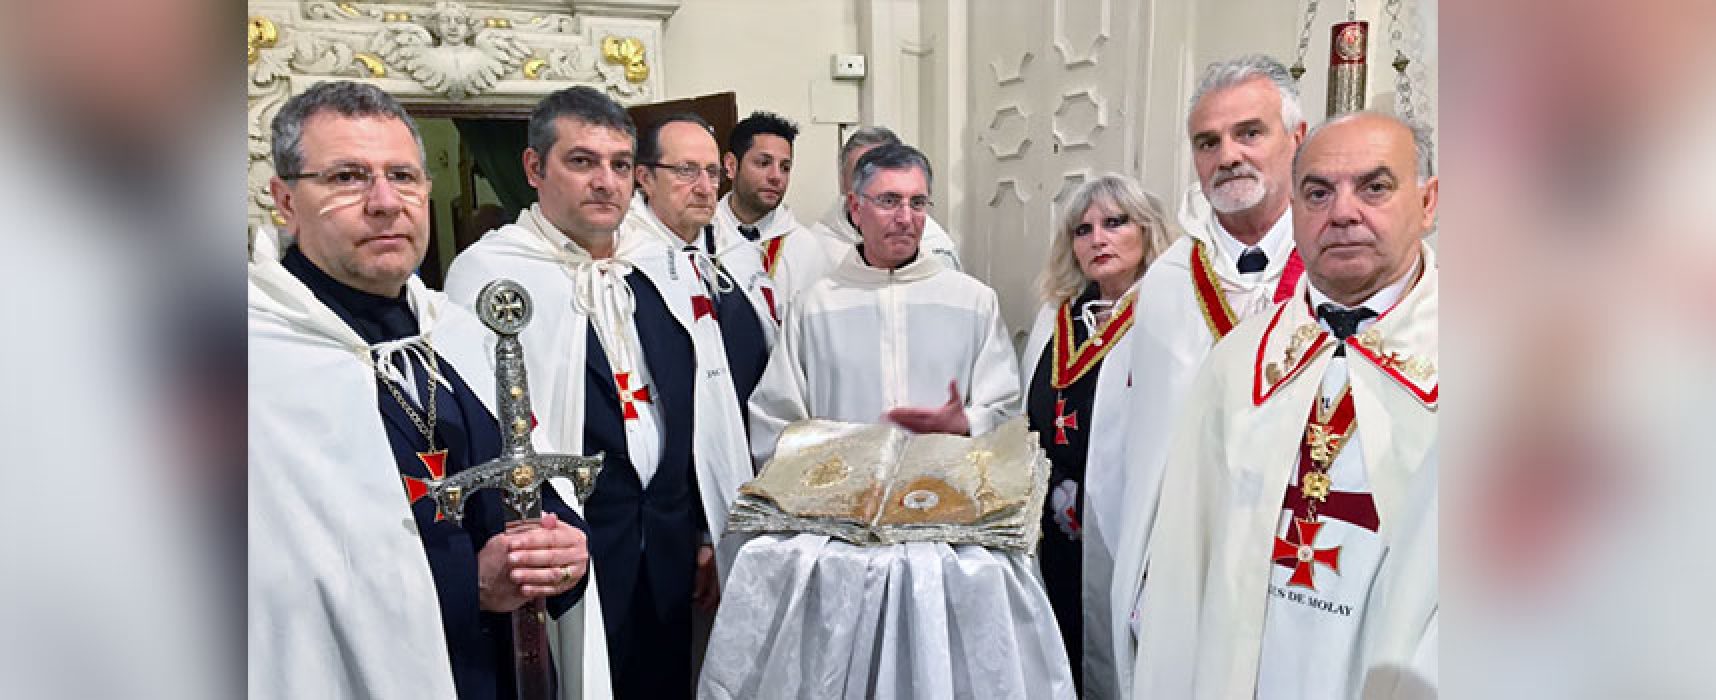 A Bisceglie l’incontro Storico culturale “Sulle Tracce dei Templari in Puglia”